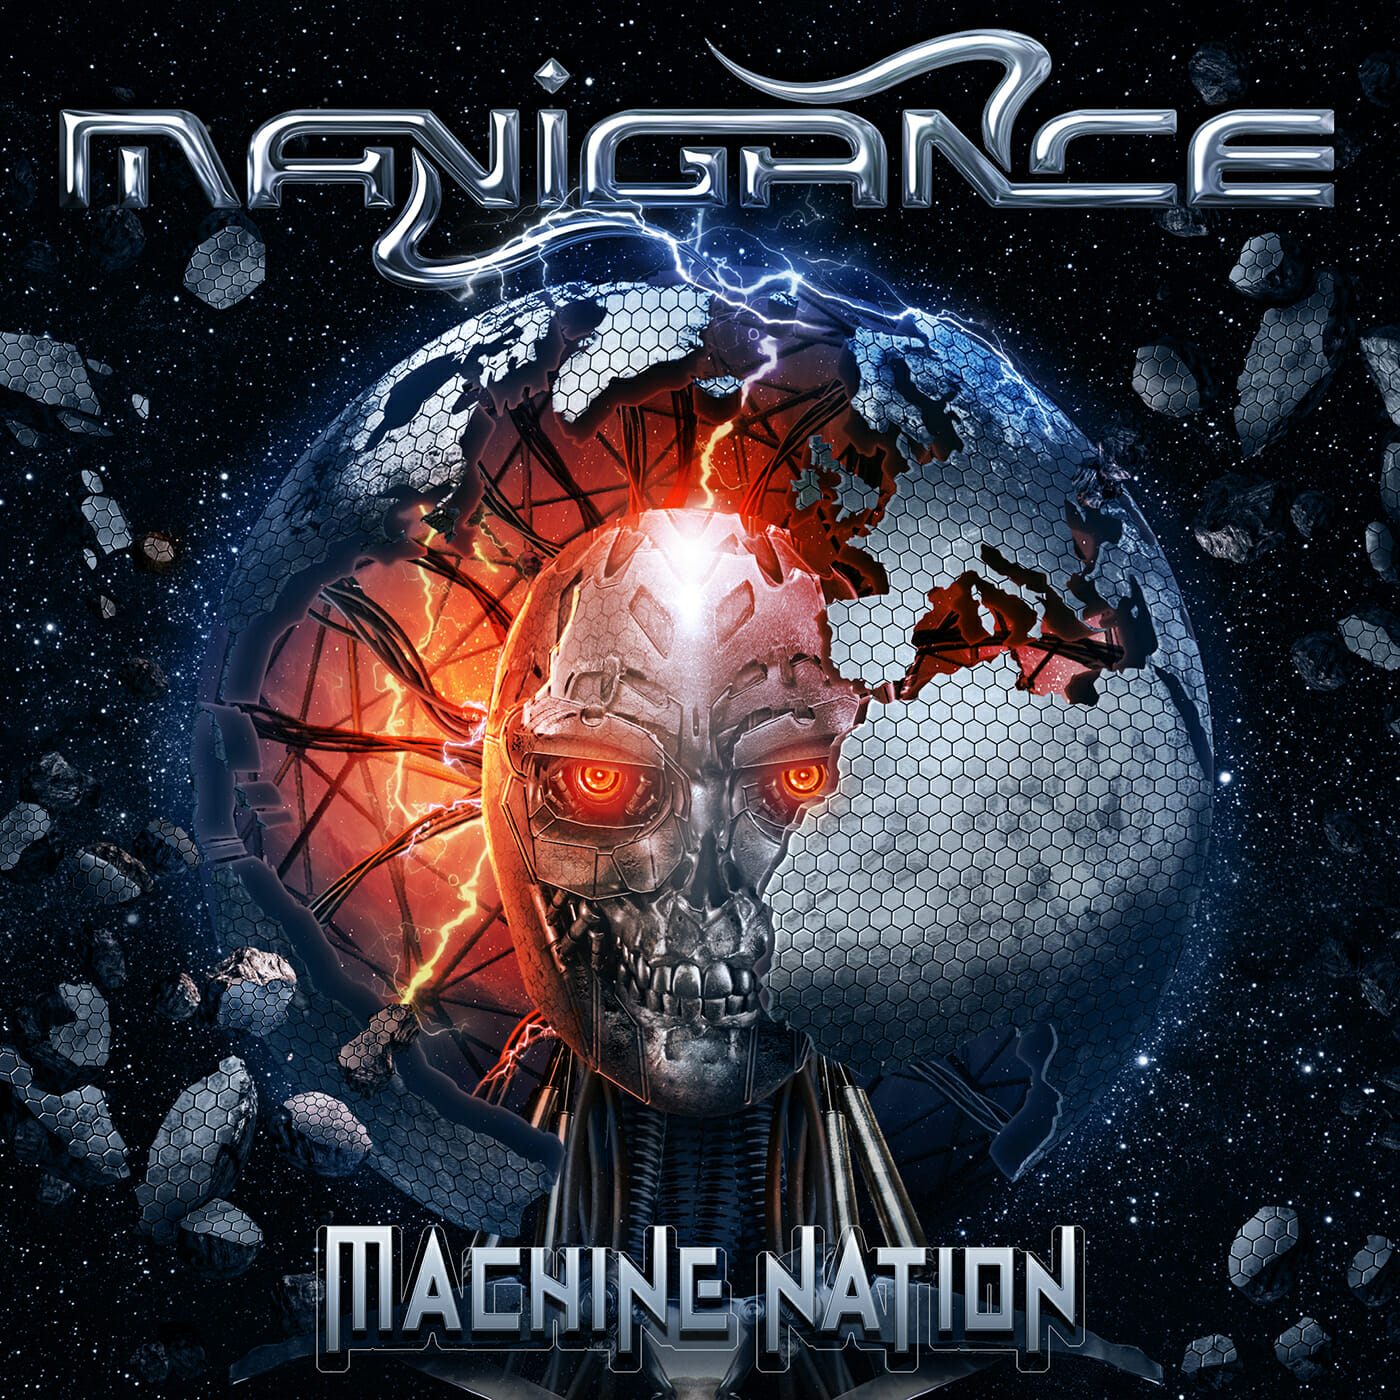 Manigance – “Machine Nation”